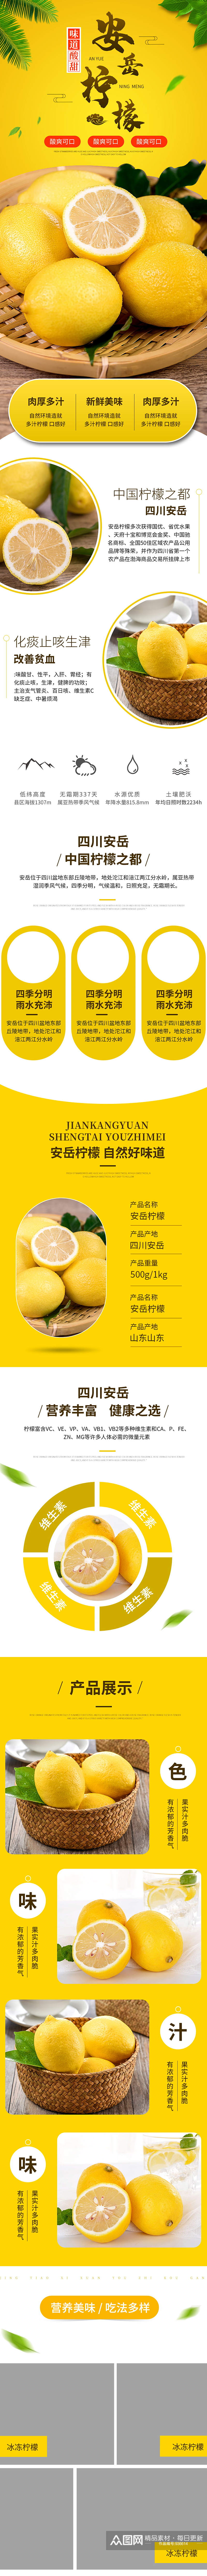 淘宝小清新生鲜水果青柠檬详情页模板素材